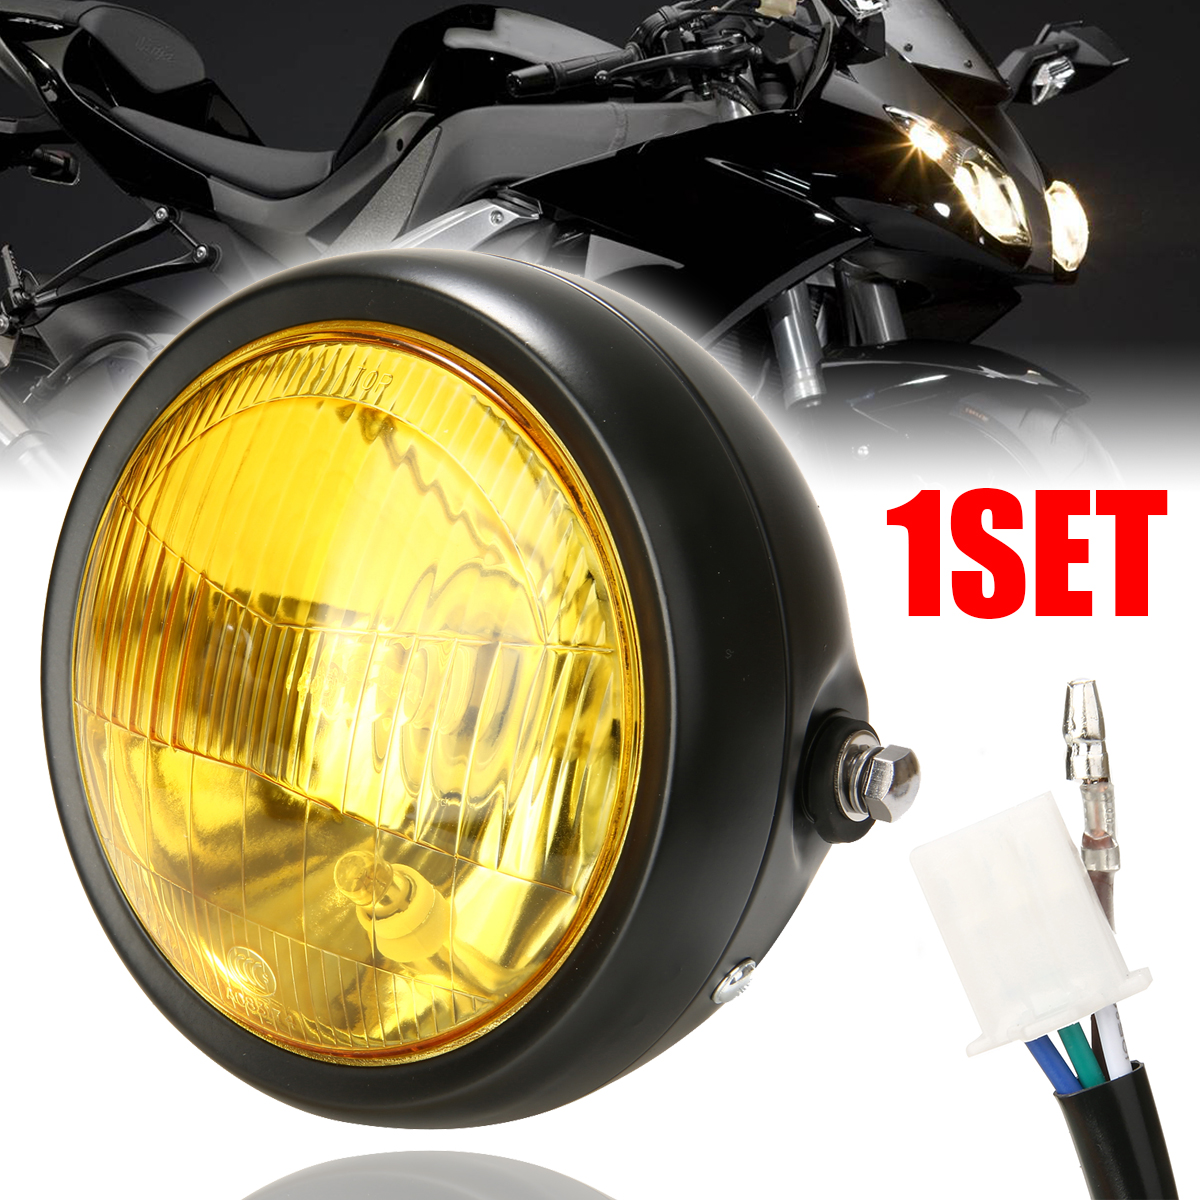 1PC 6.5 "12 V 35W Retro Motorfiets LED Koplamp Met Zwarte Grill Cover Behuizing Geel Lens Voor cafe Racer Choppers Fietsen